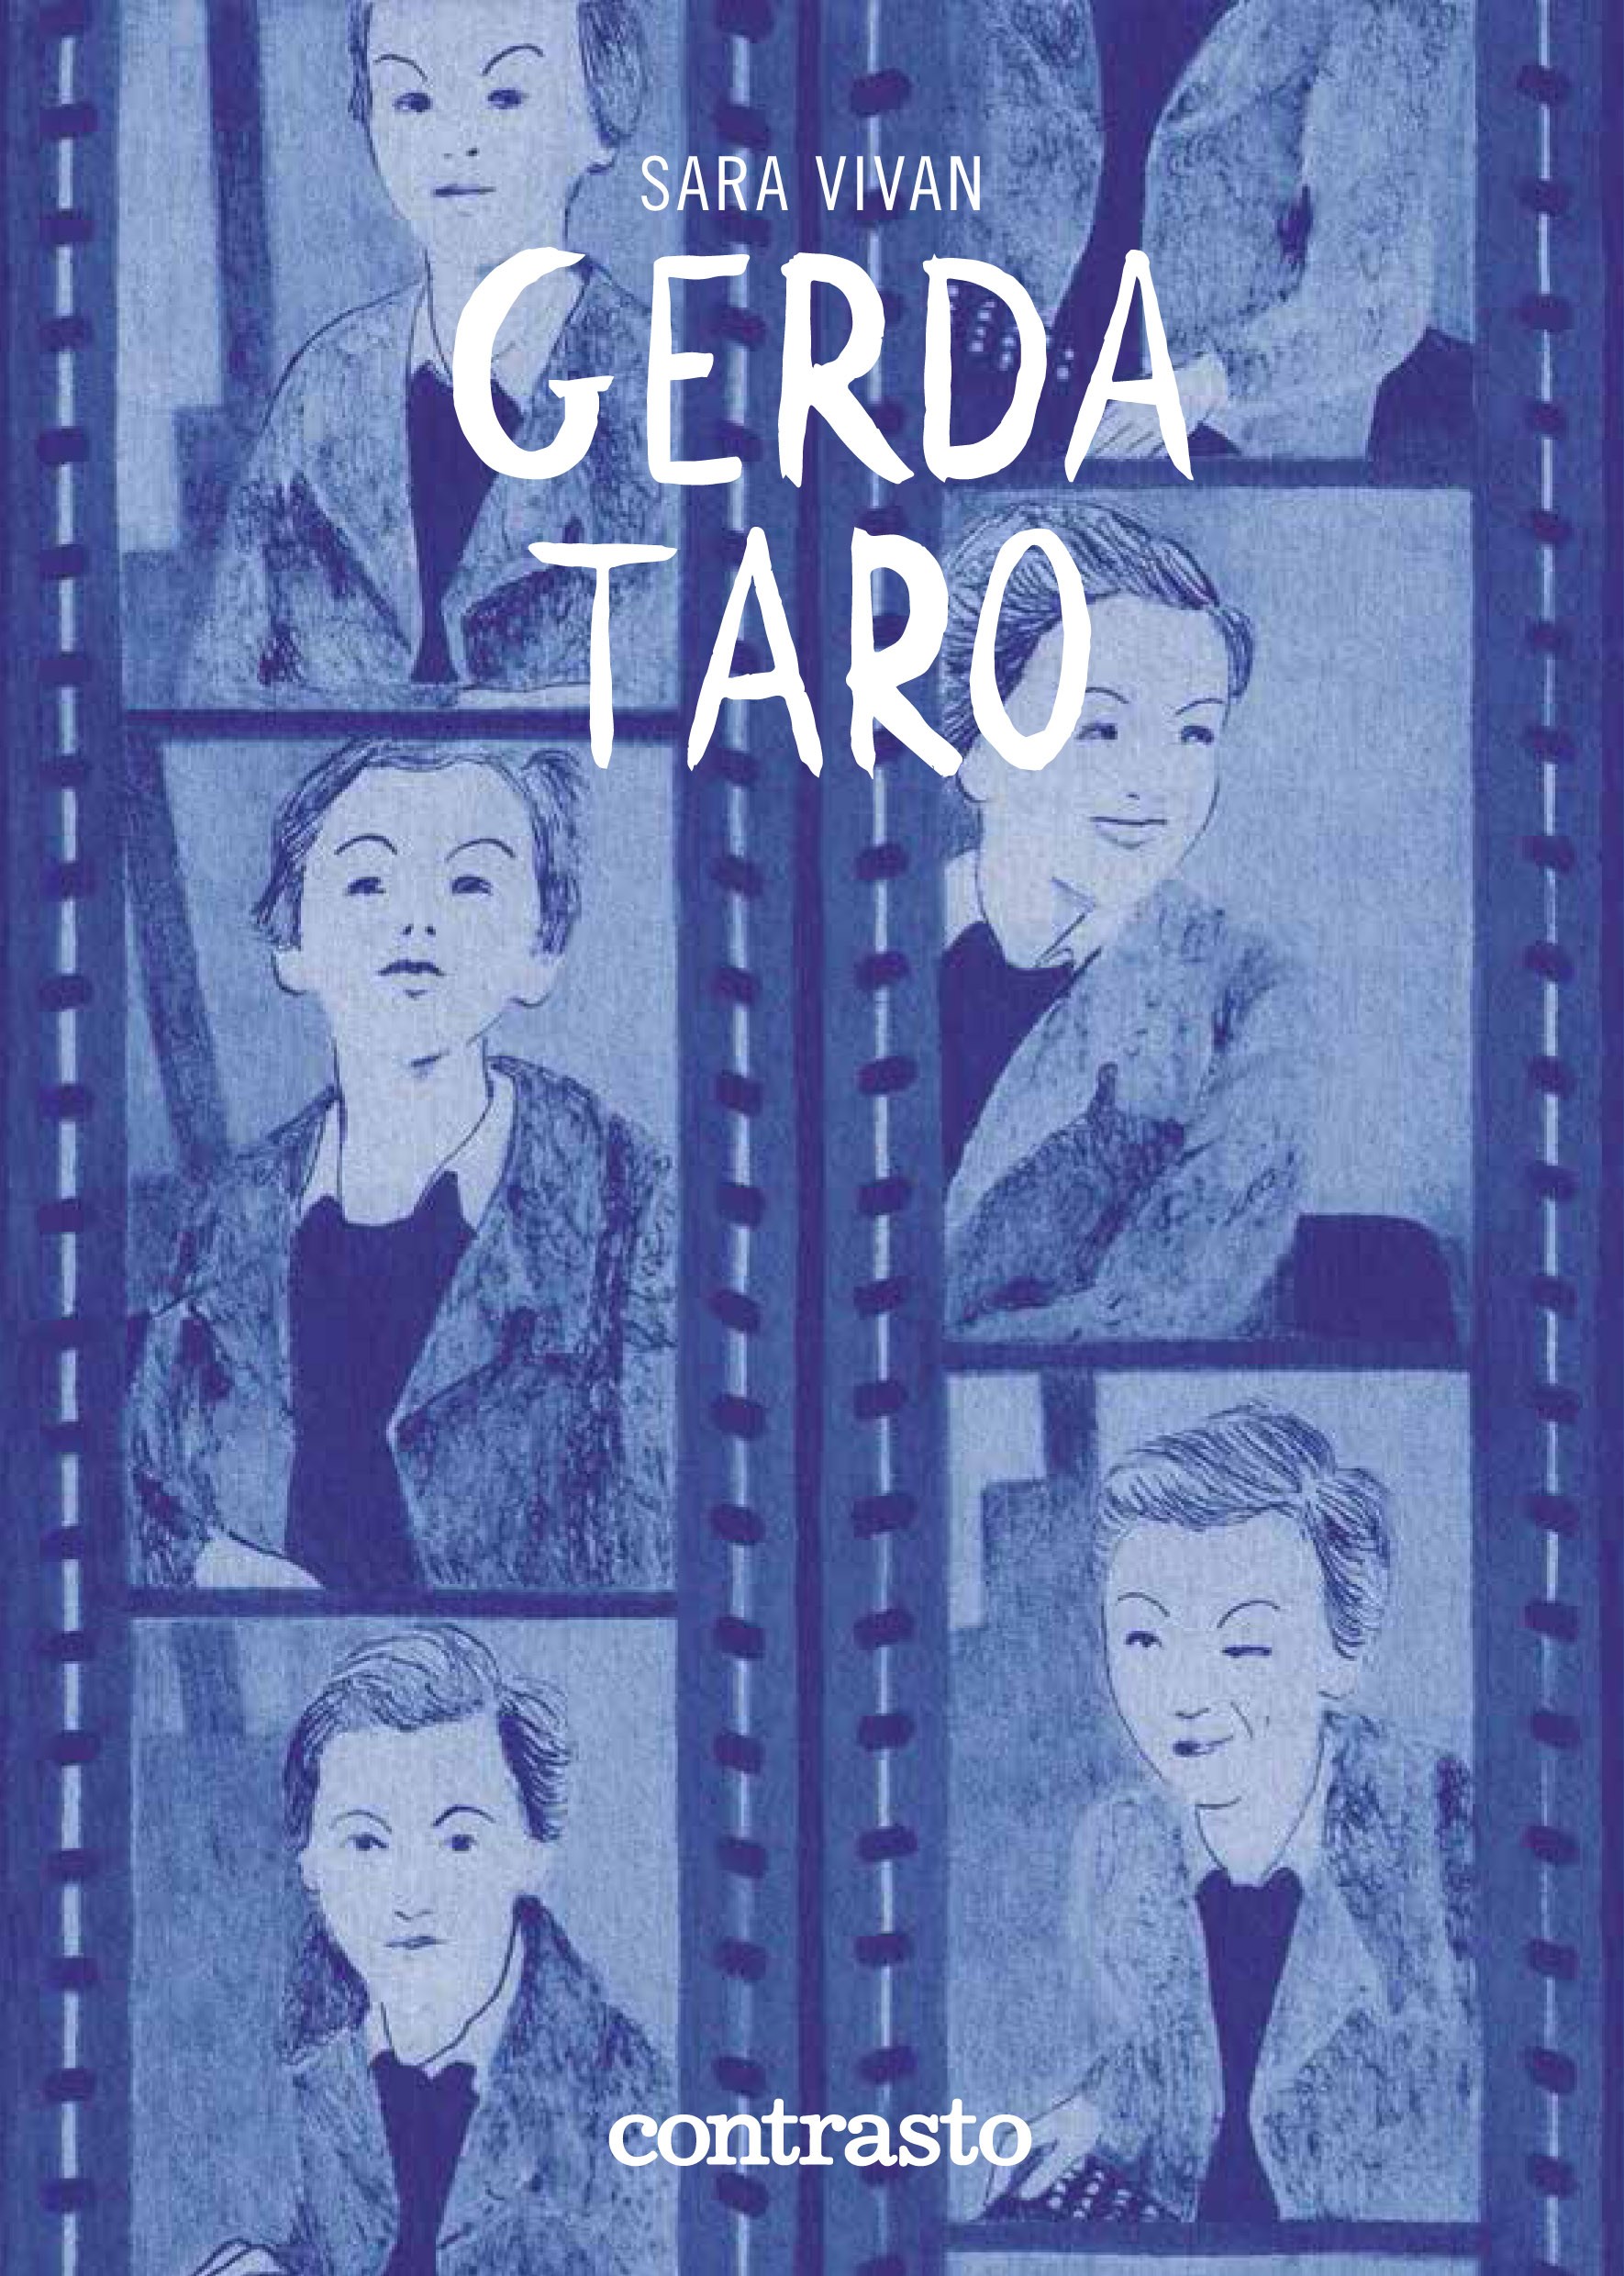 Gerda Taro